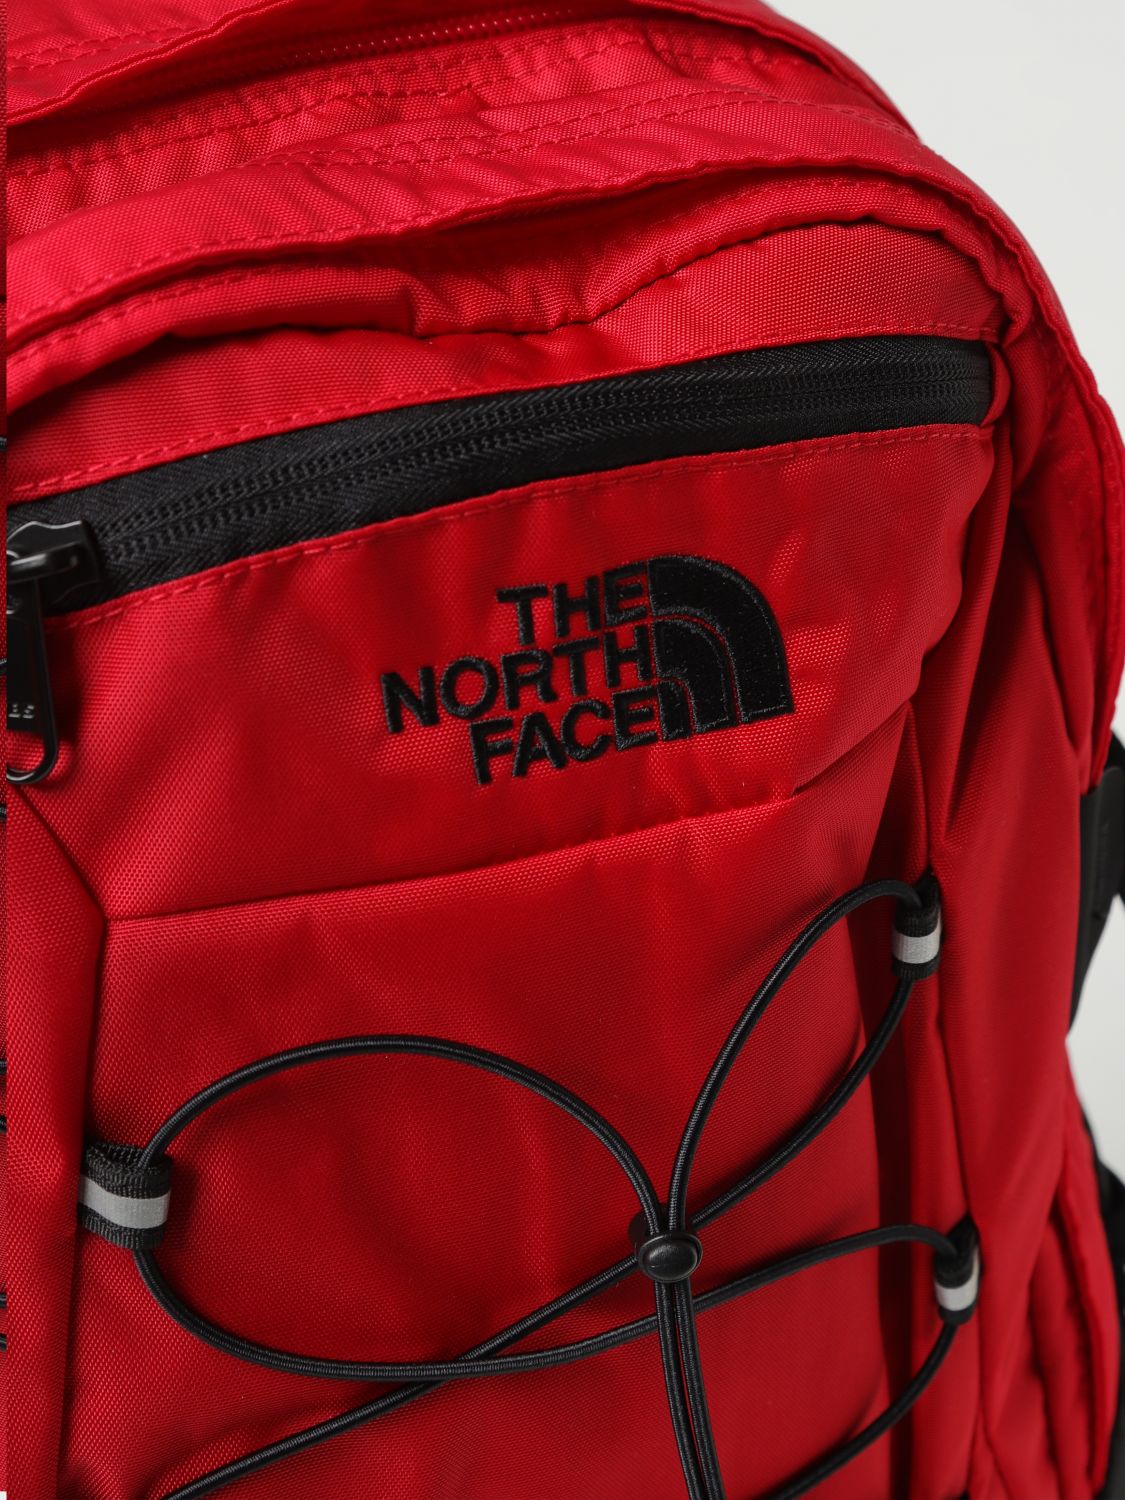 The North Face Sacs A Dos Homme De Couleur Rouge 2191779-rouge0 - Modz